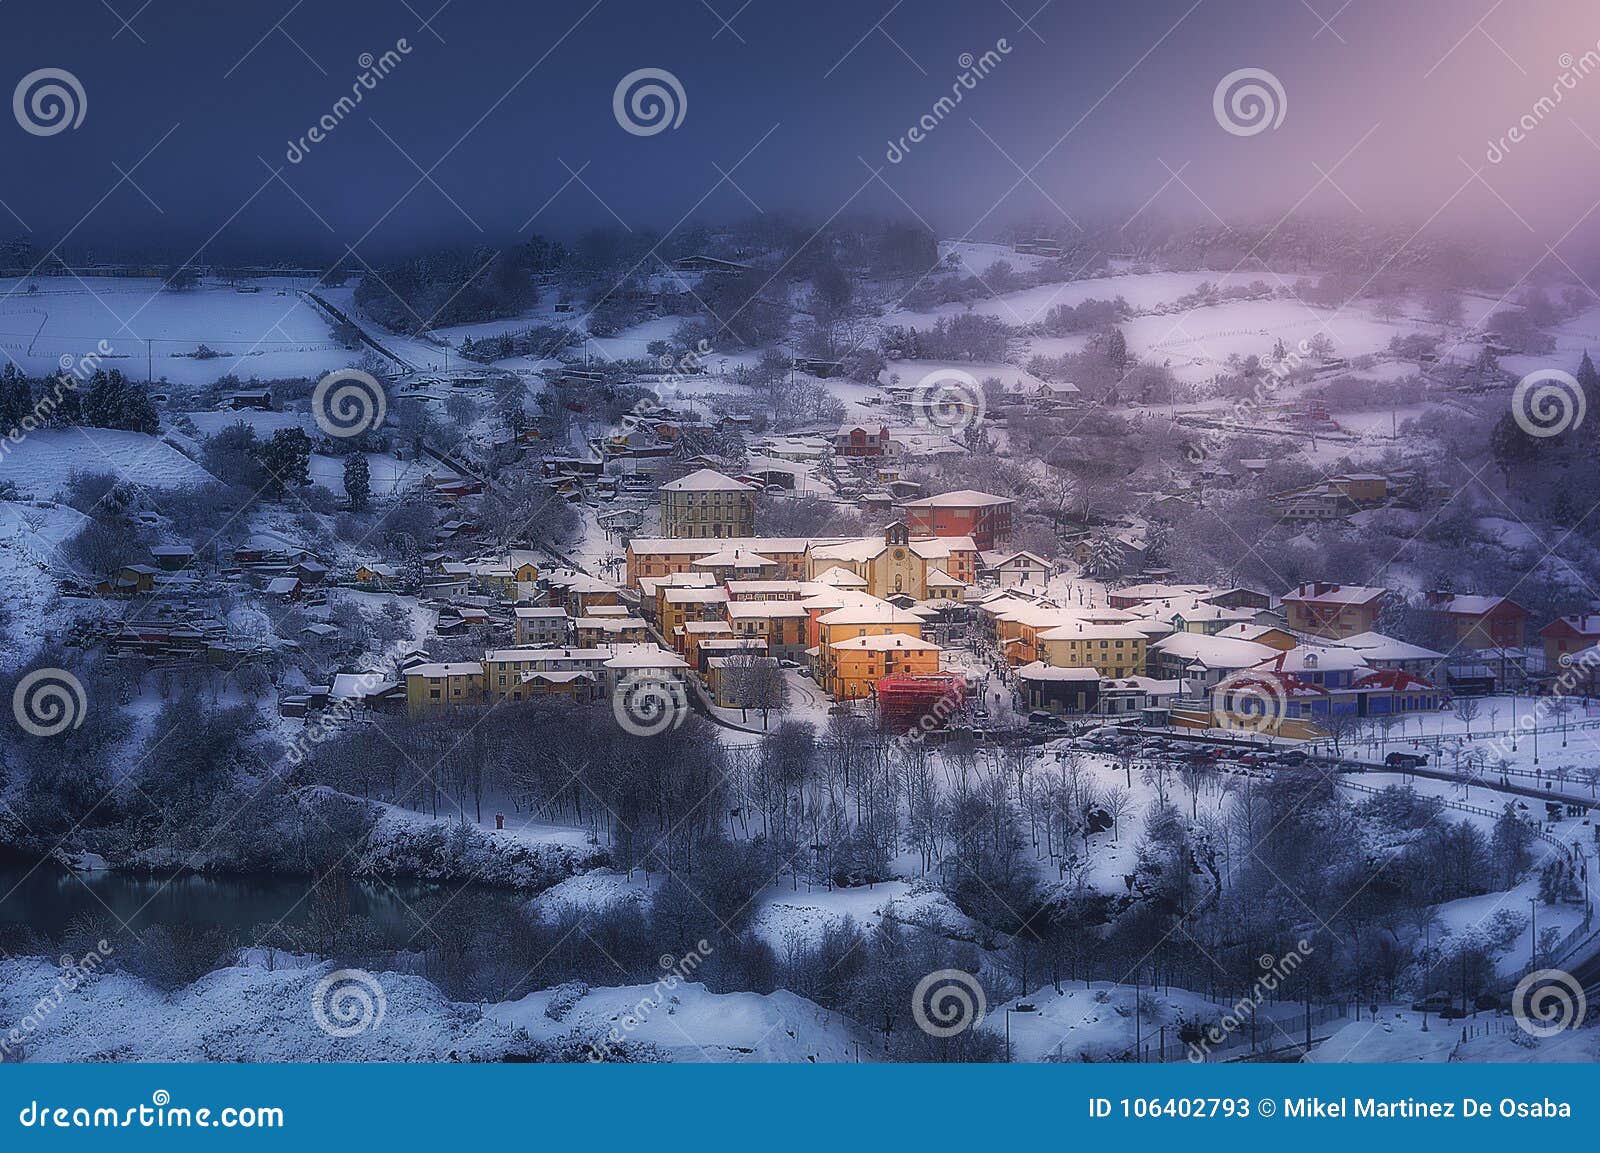 la arboleda village in winter